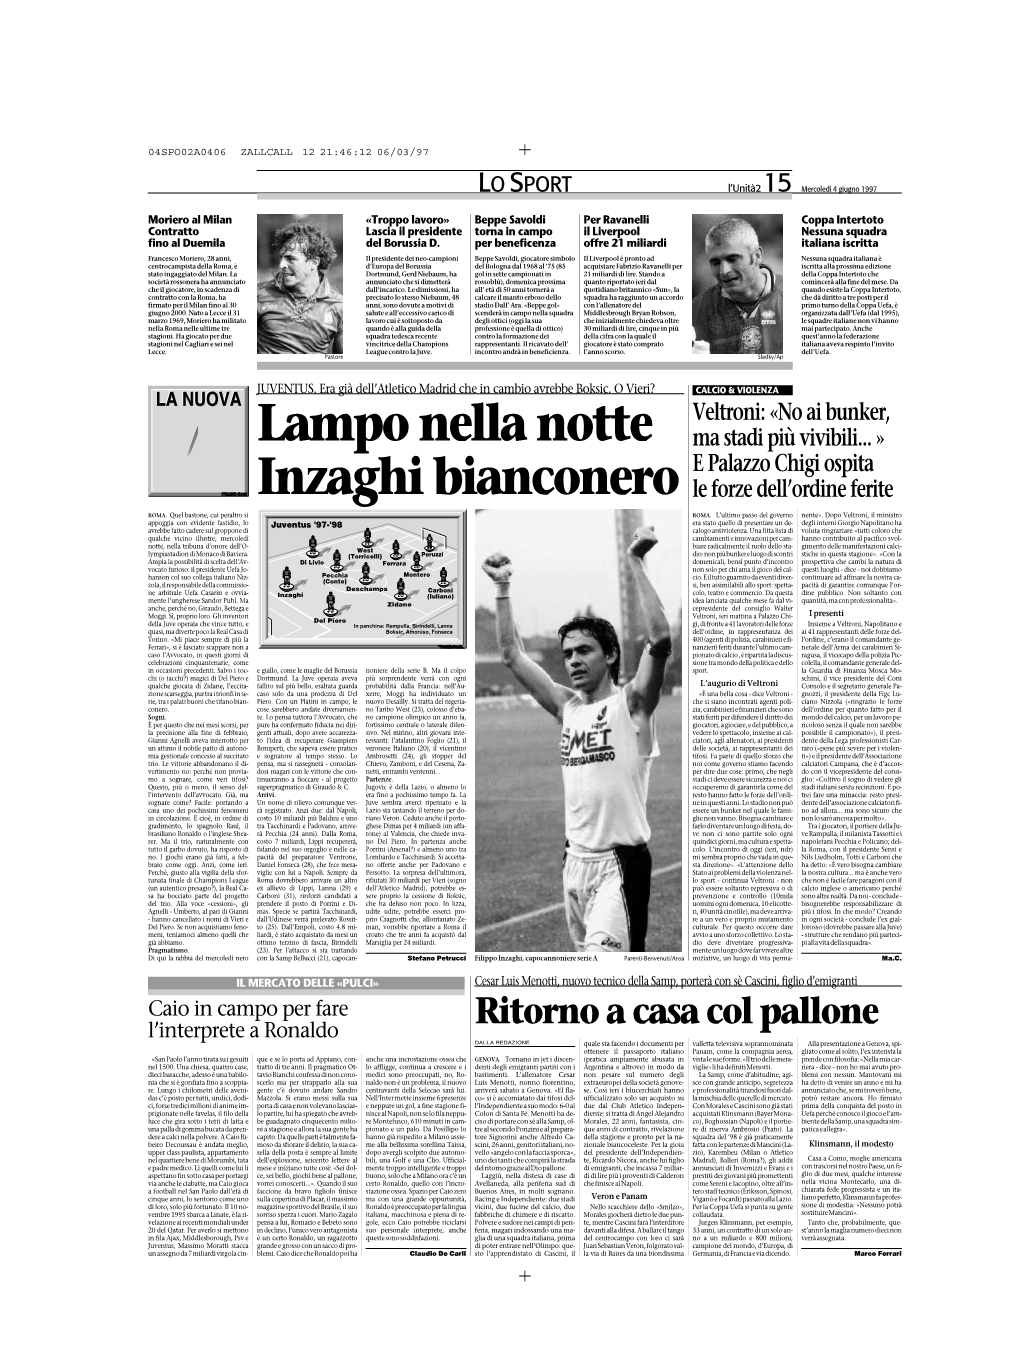 Lampo Nella Notte Inzaghi Bianconero